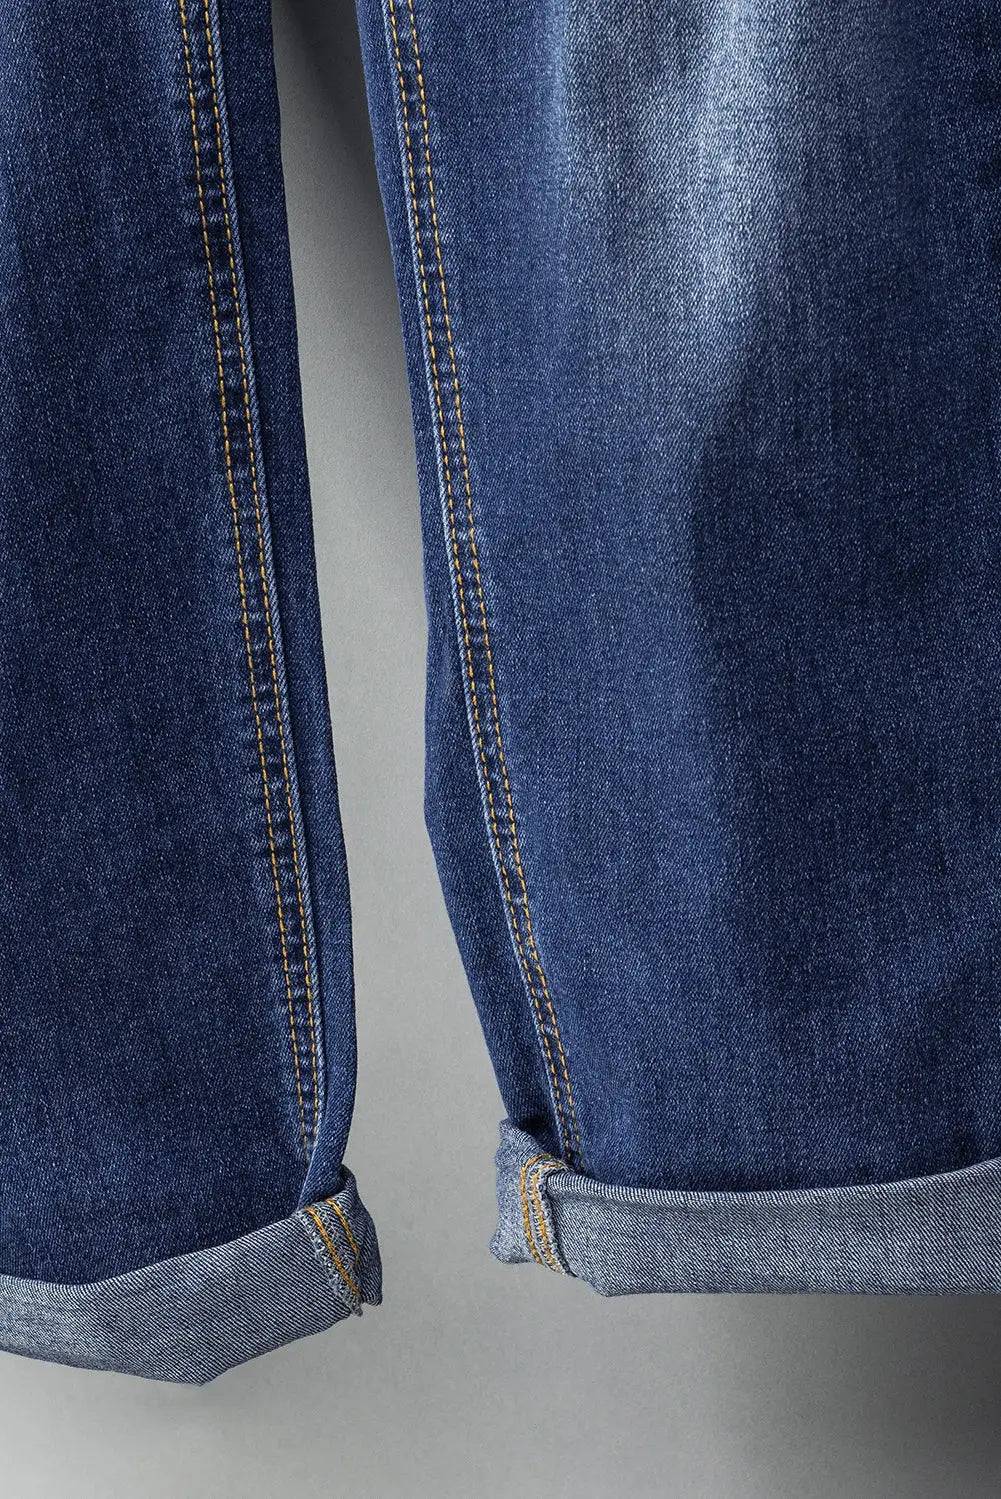 Black distressed bib denim overalls - jeans